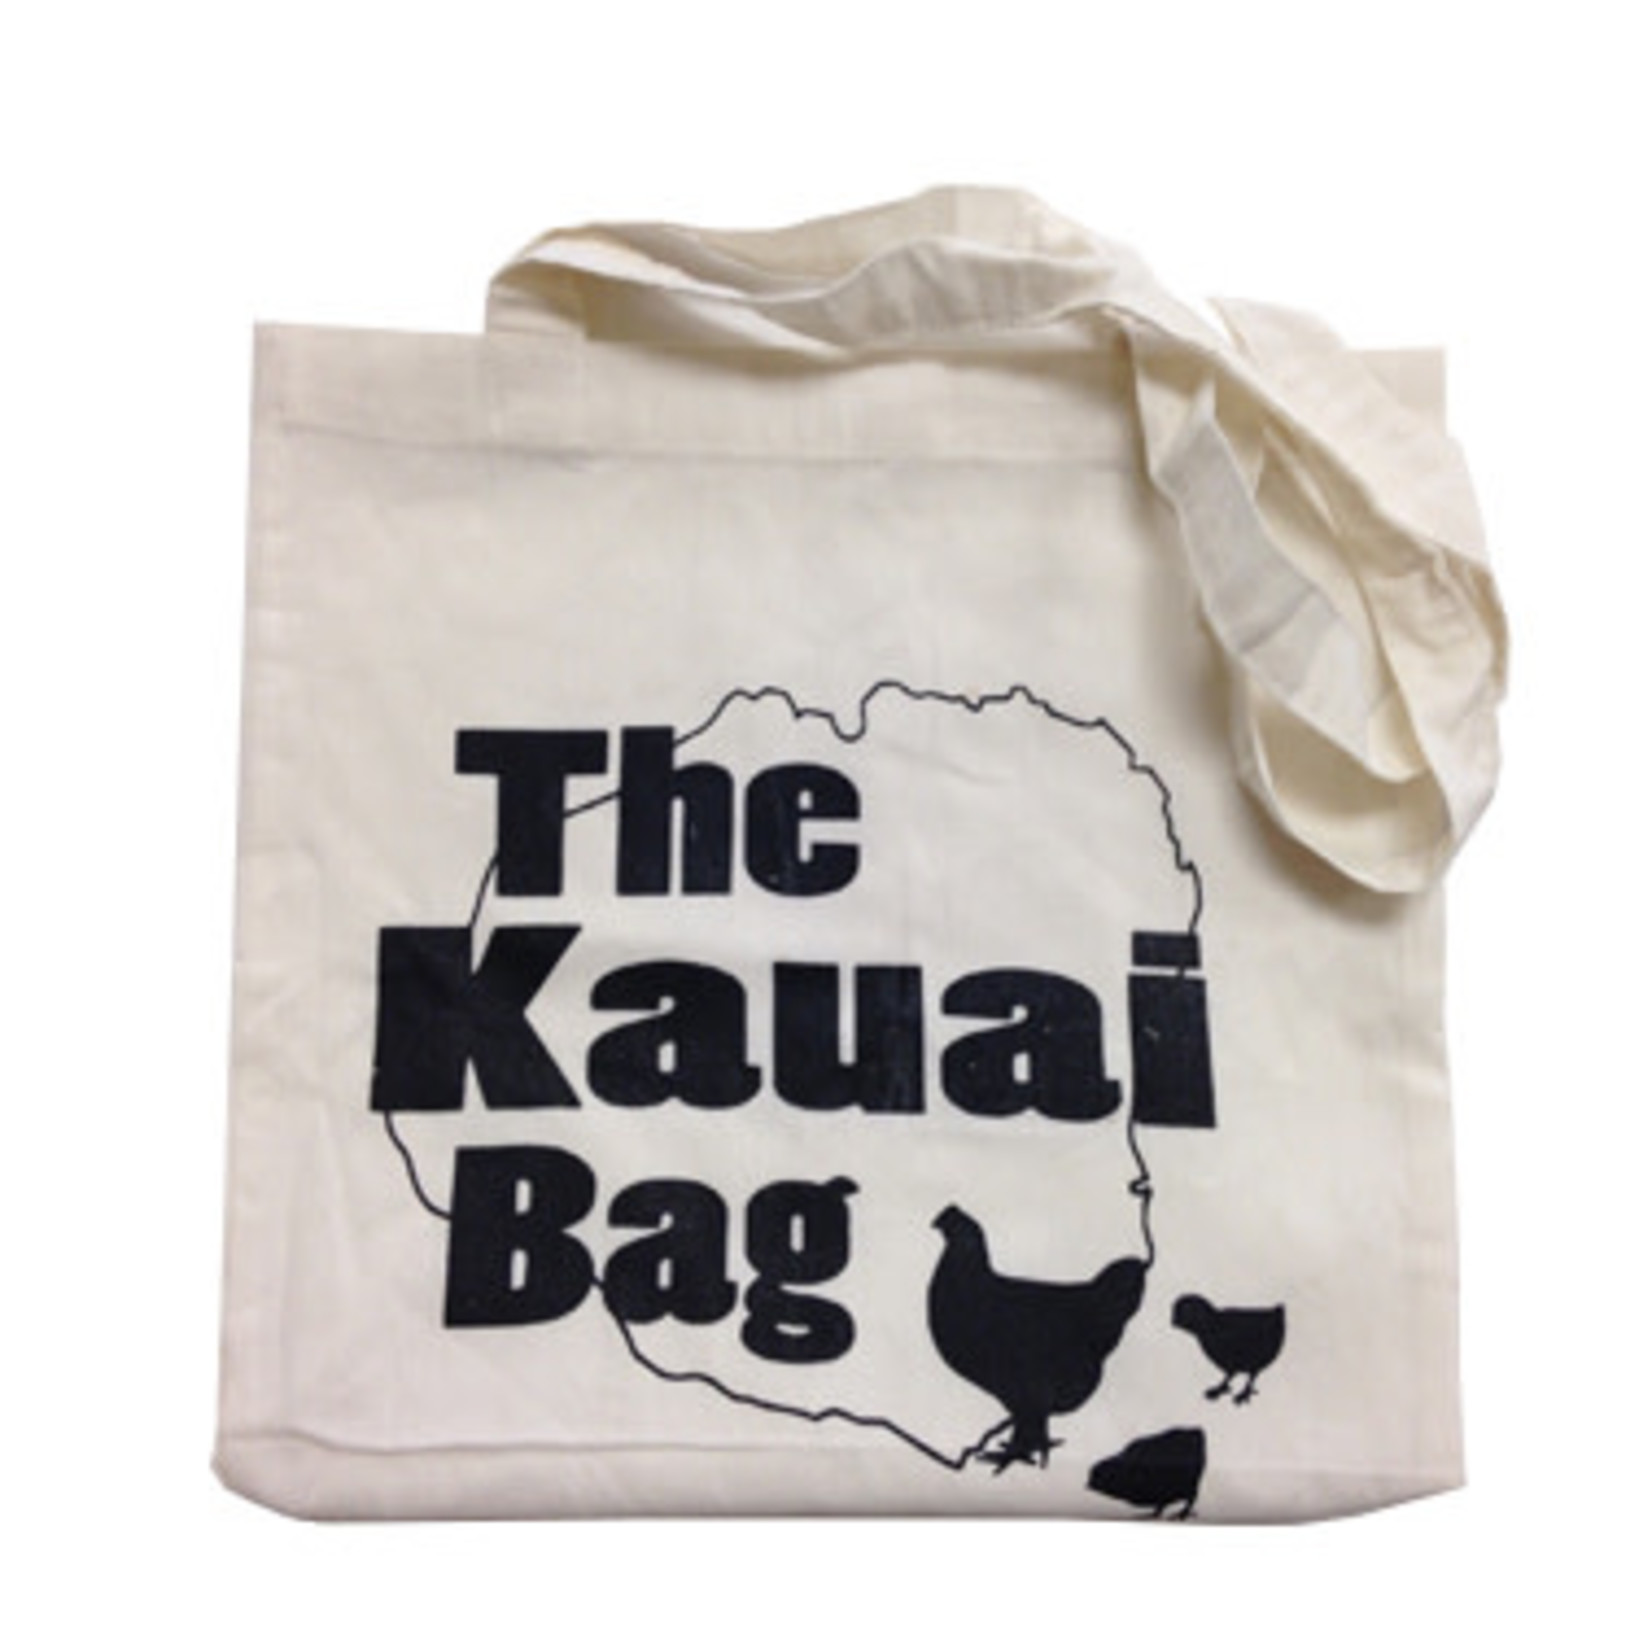 The Kauai Bag